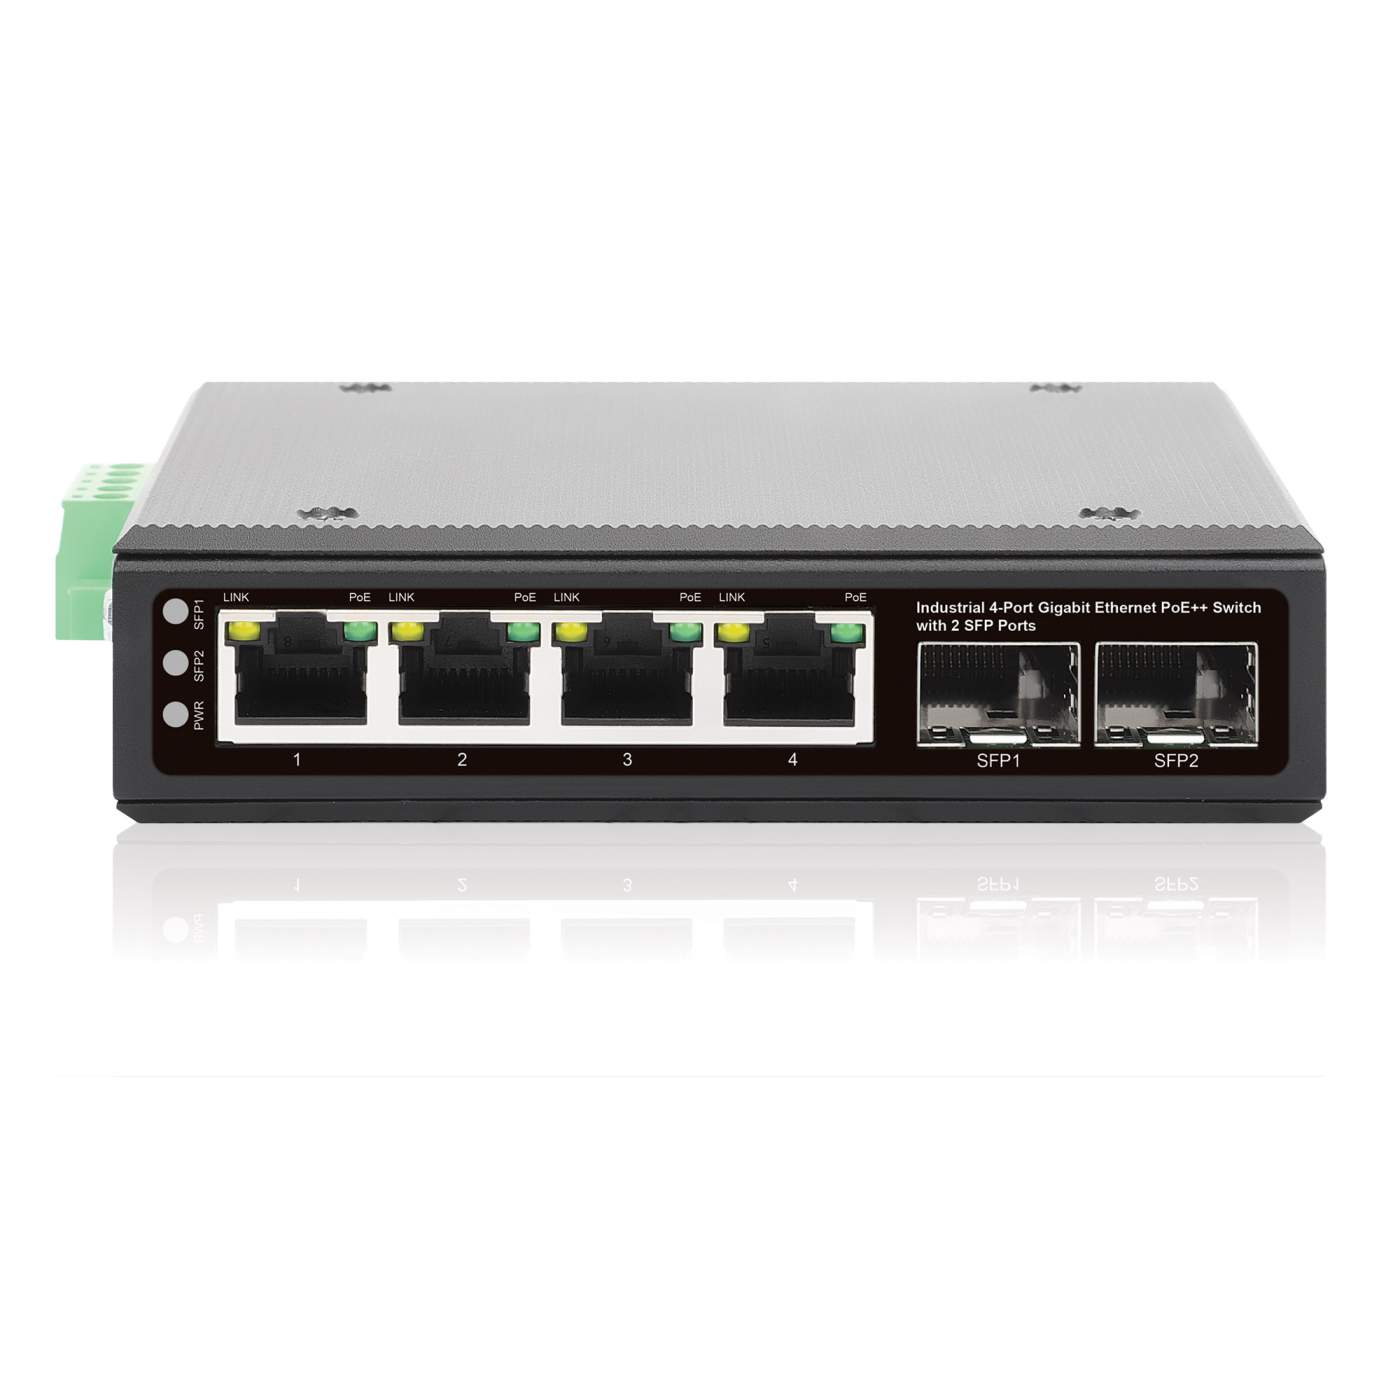 Intellinet 16 Port Gigabit Ethernet Switch – 10 / 100 / 1000 Mbps -  Computer Desktop Internet Networking Splitter LAN Hub Router, Unmanaged,  Metal